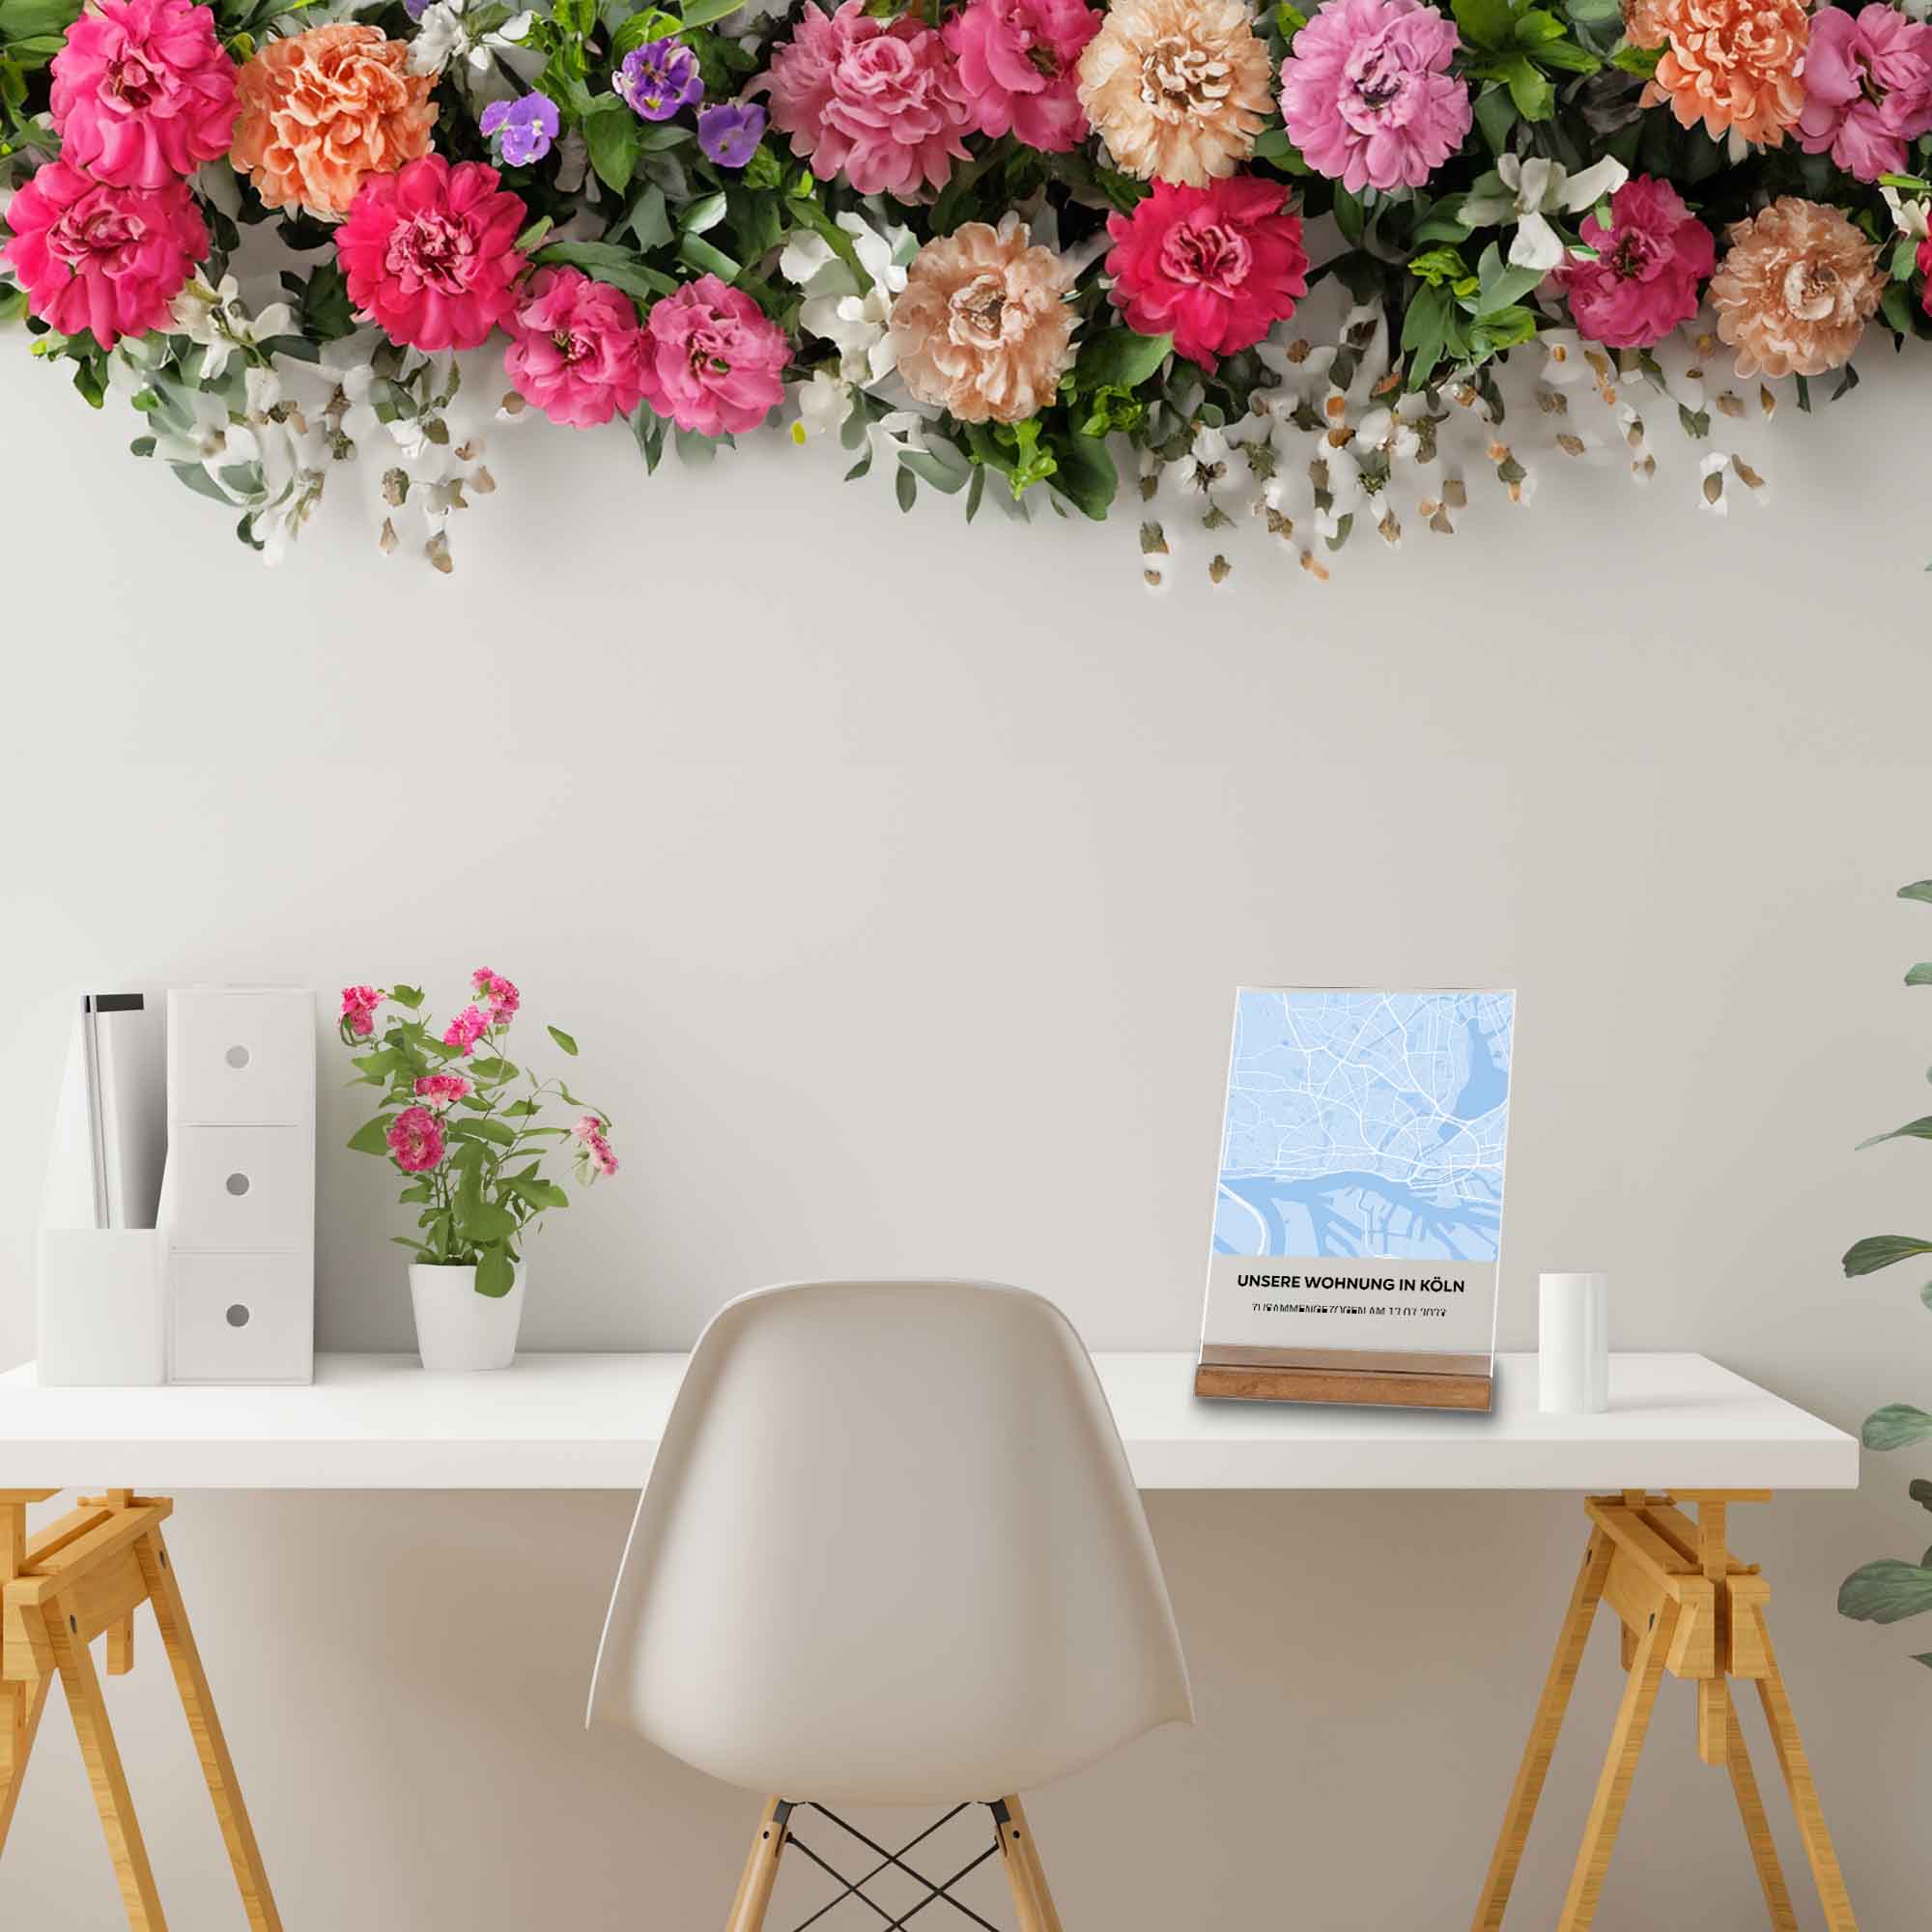 aGeschenk Koeln-Dekoration auf dem Schreibtisch-mit Blumenkranz